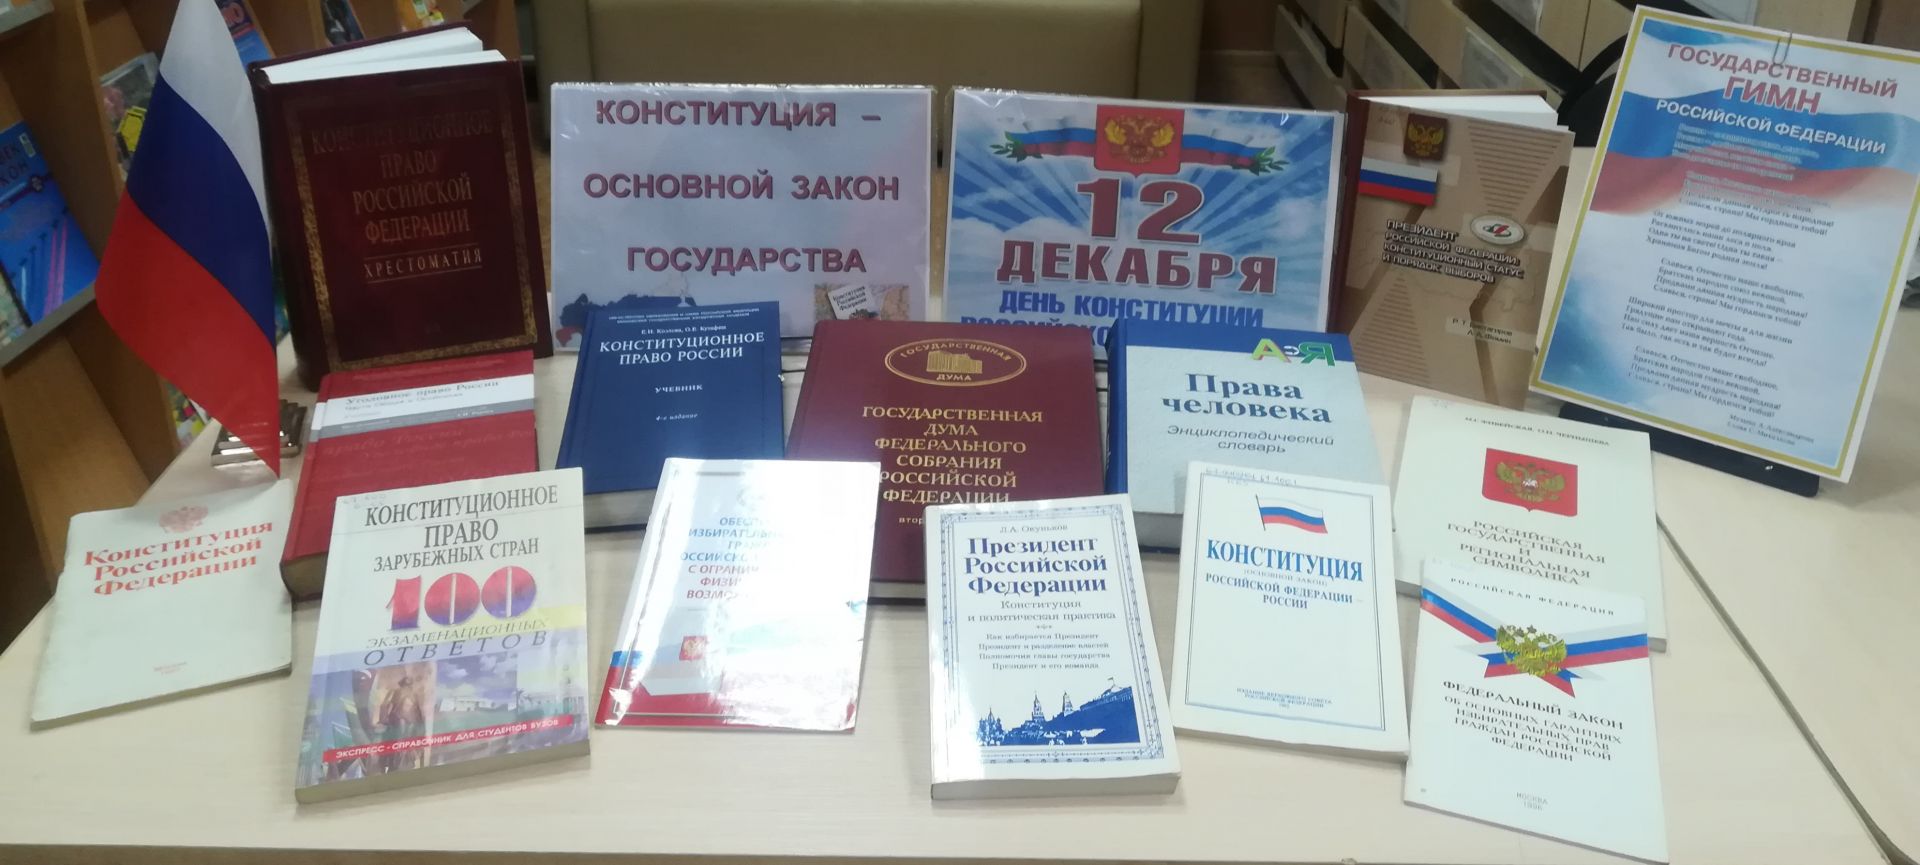 Книжная выставка к Конституции РФ